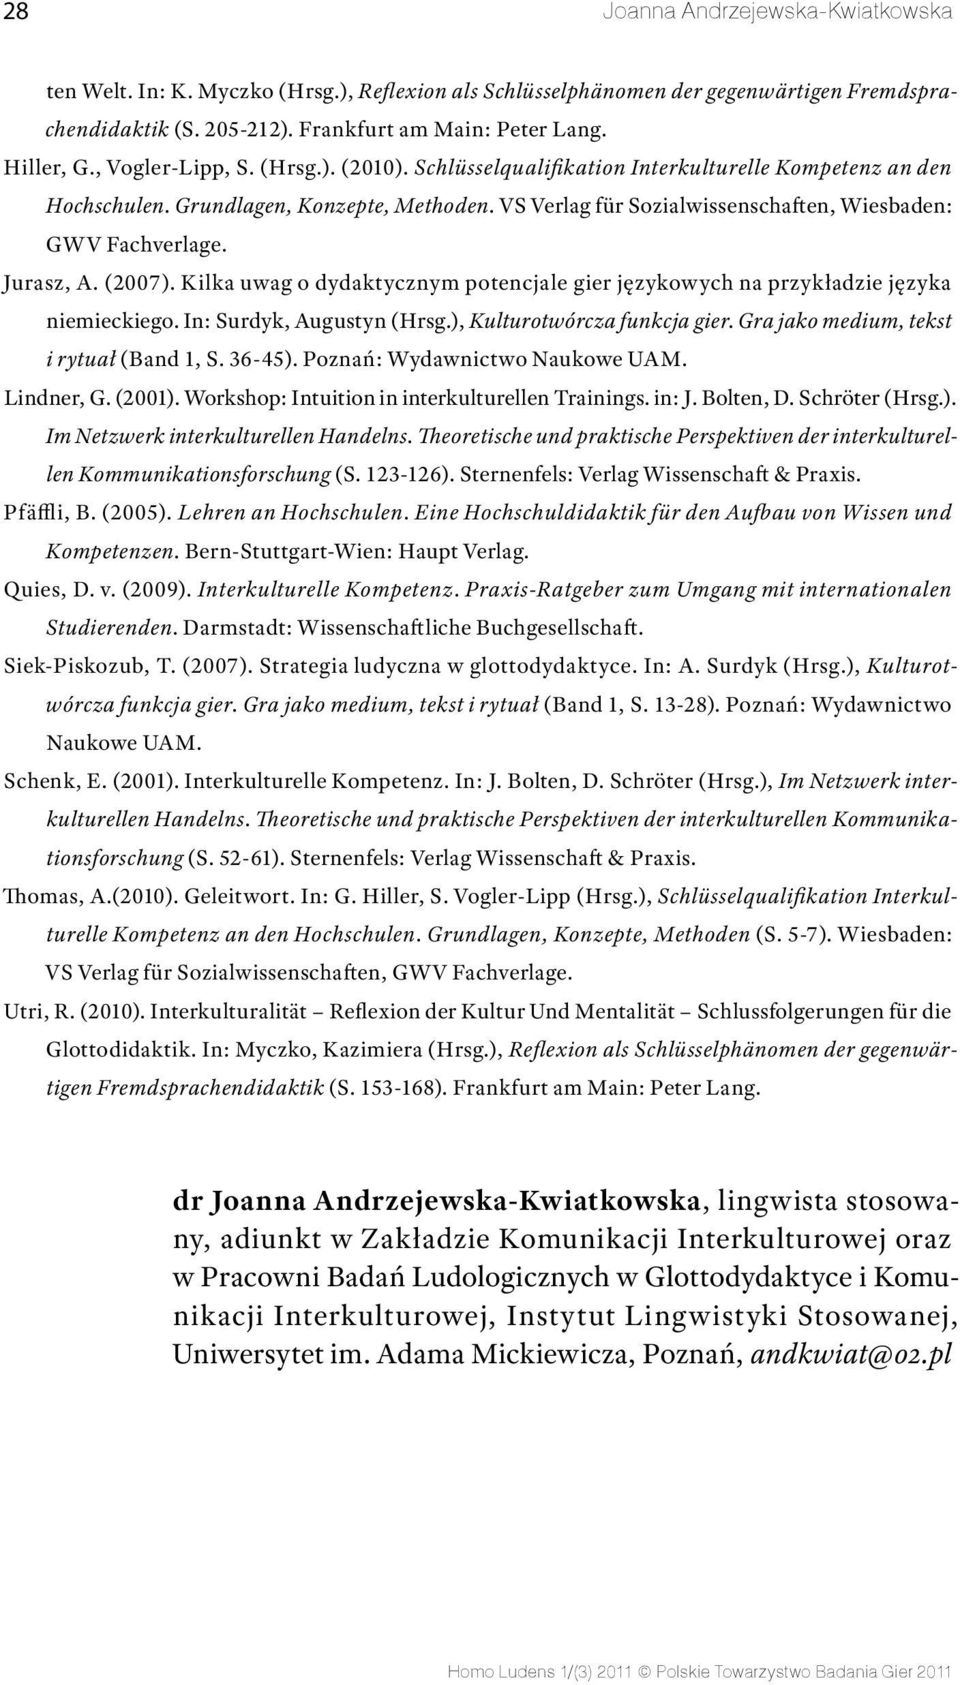 Jurasz, A. (2007). Kilka uwag o dydaktycznym potencjale gier językowych na przykładzie języka niemieckiego. In: Surdyk, Augustyn (Hrsg.), Kulturotwórcza funkcja gier.